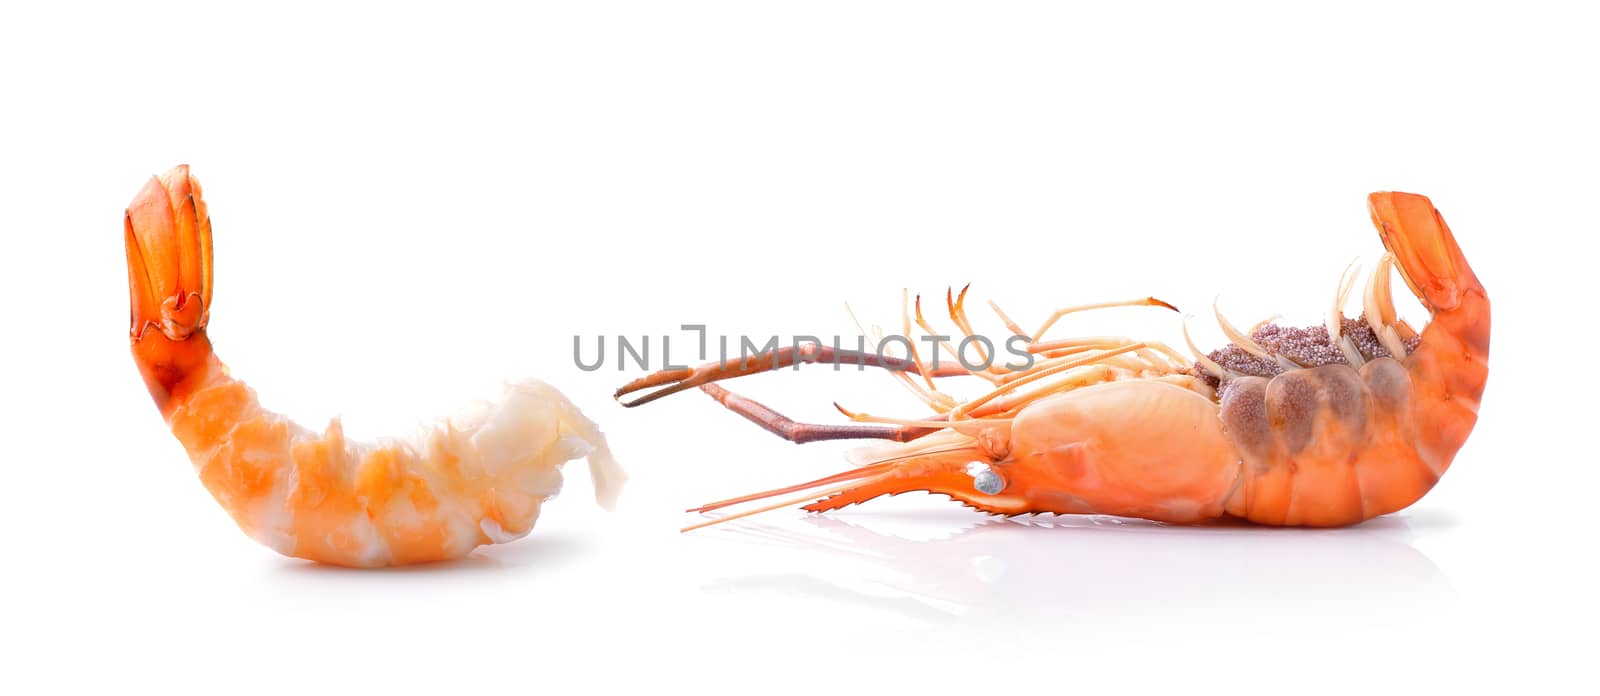 Boiled shrimp isolated on white background